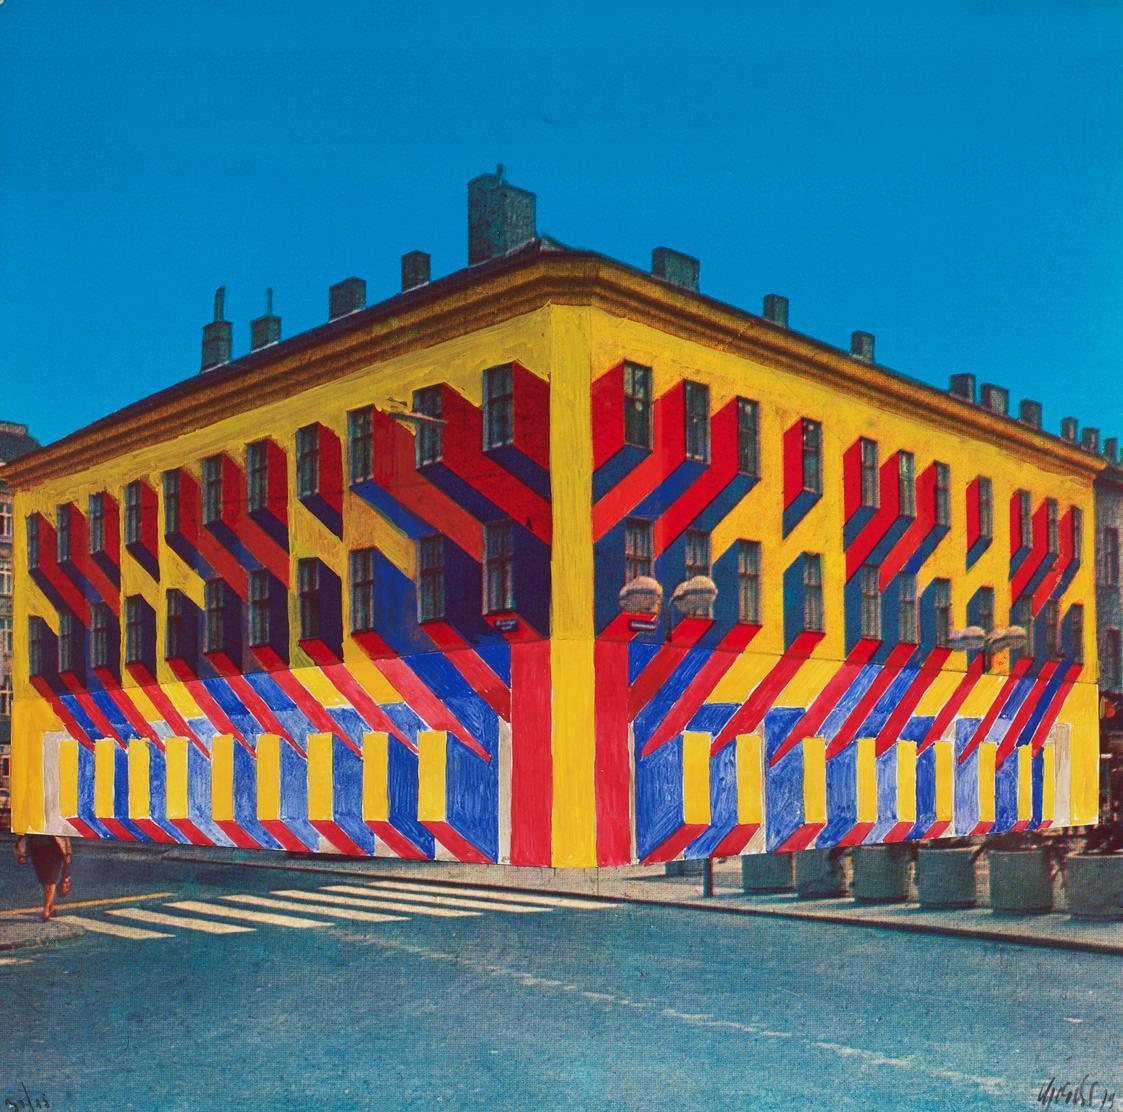 Roland Goeschl, Humanic, 1979, Übermalte Farbfotografie, 60 × 60,2 cm, Belvedere, Wien, Inv.-Nr ...